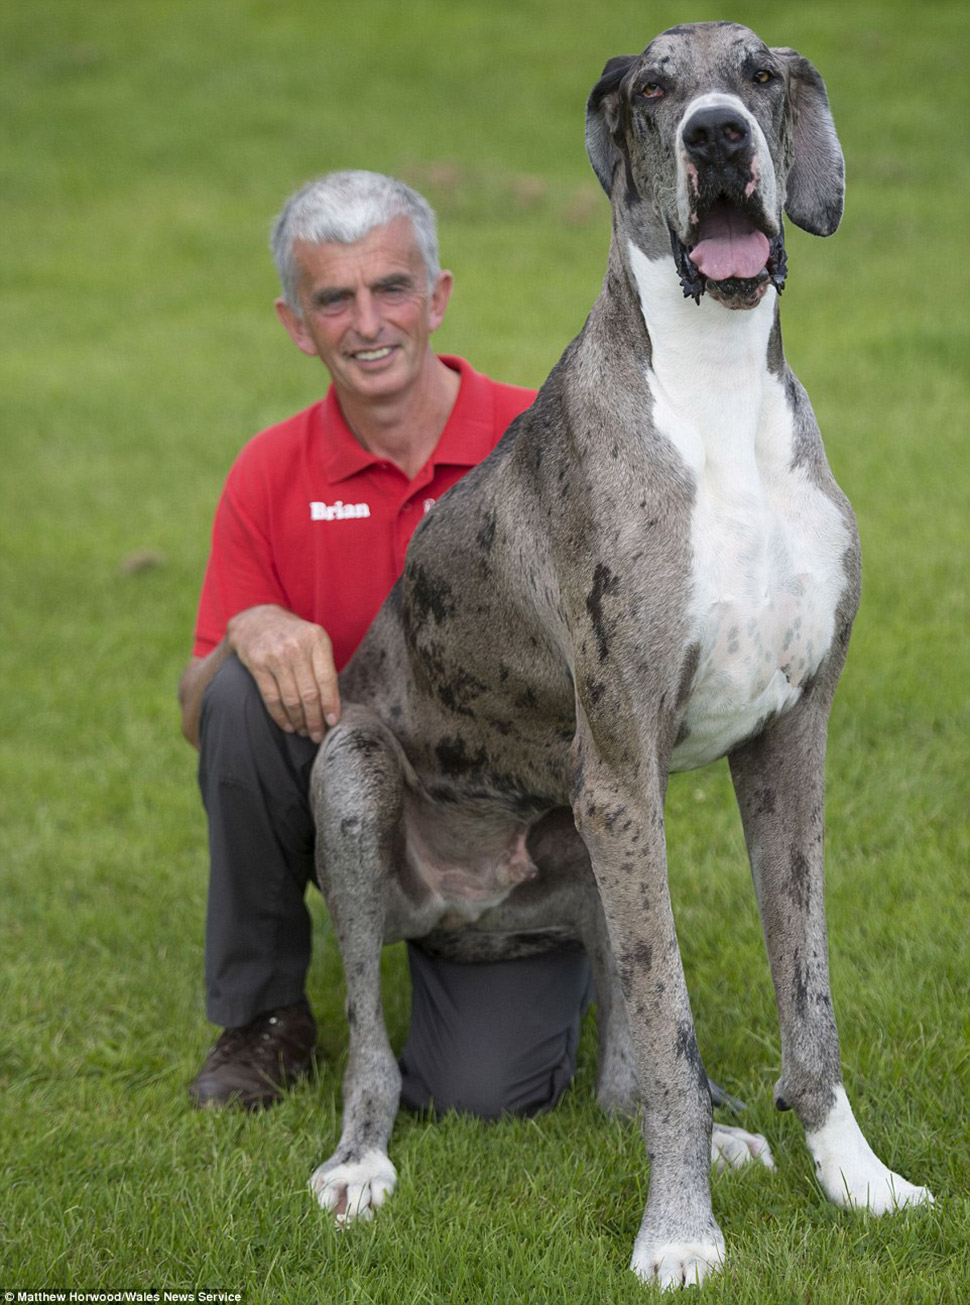 Самая высокая собака в мире: двухметровый дог весом 76 кг